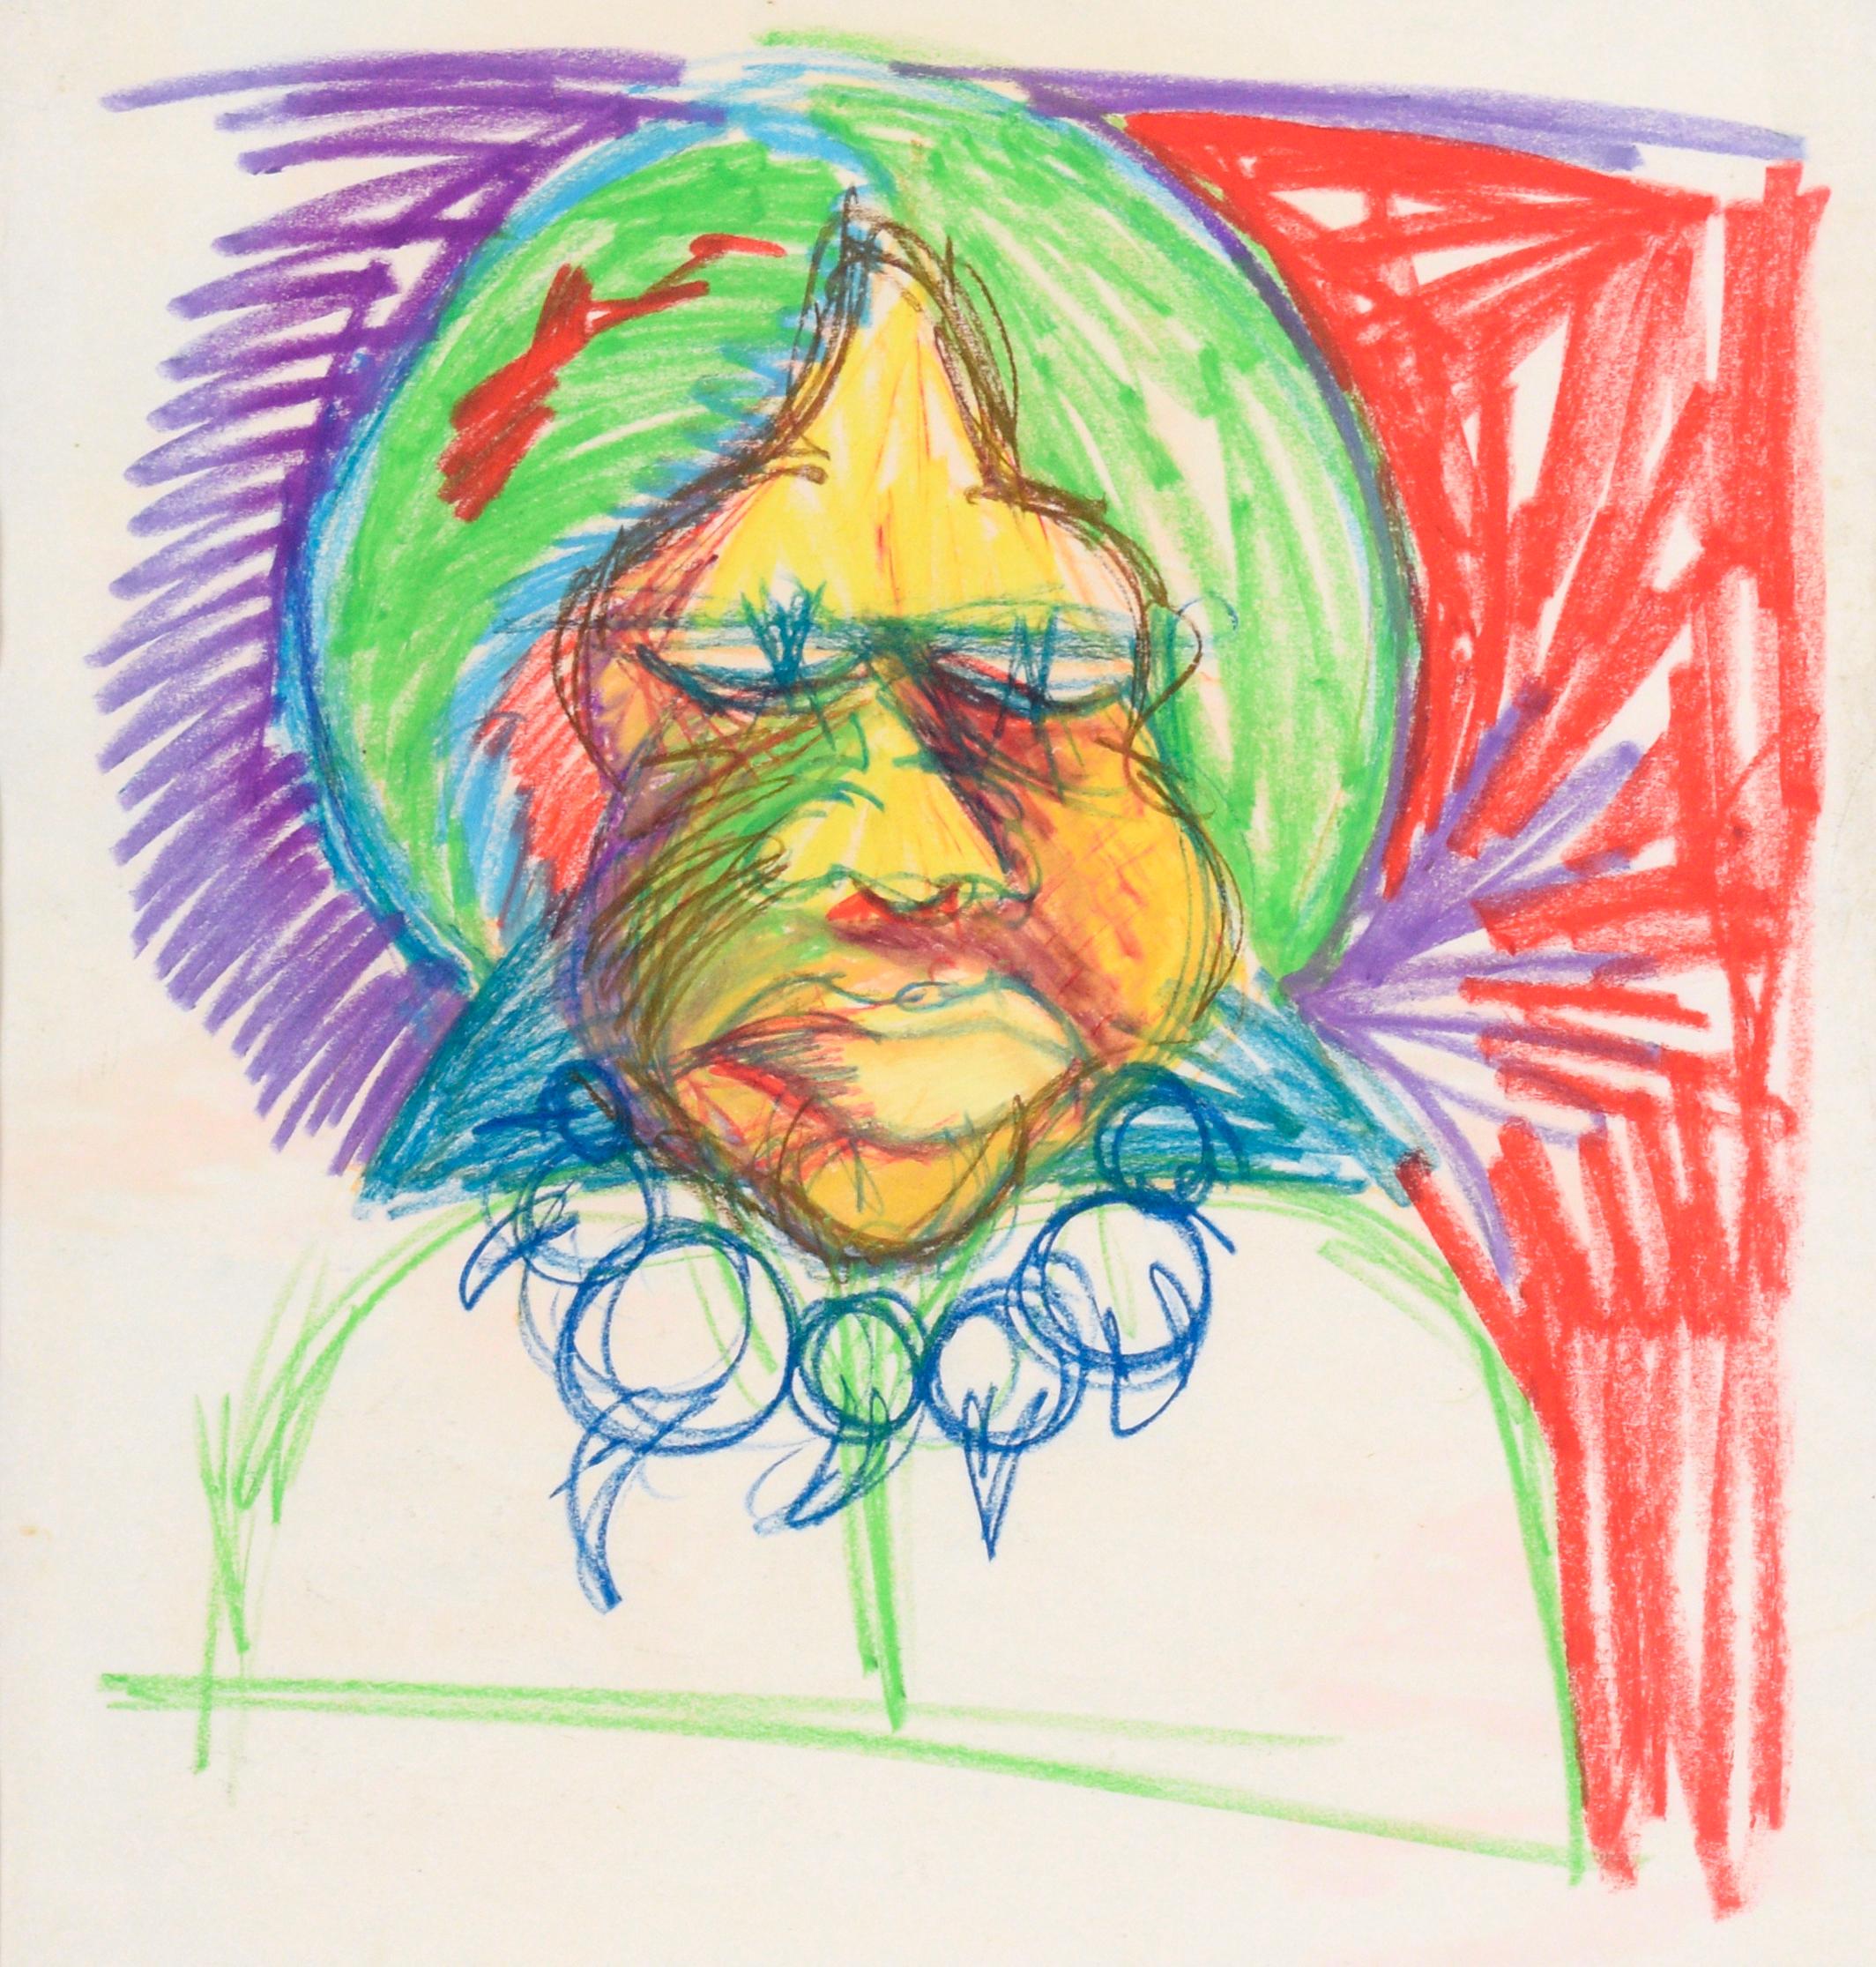 La grand-mre avec son collier - Portrait au pastel sur papier - Art de Michael William Eggleston